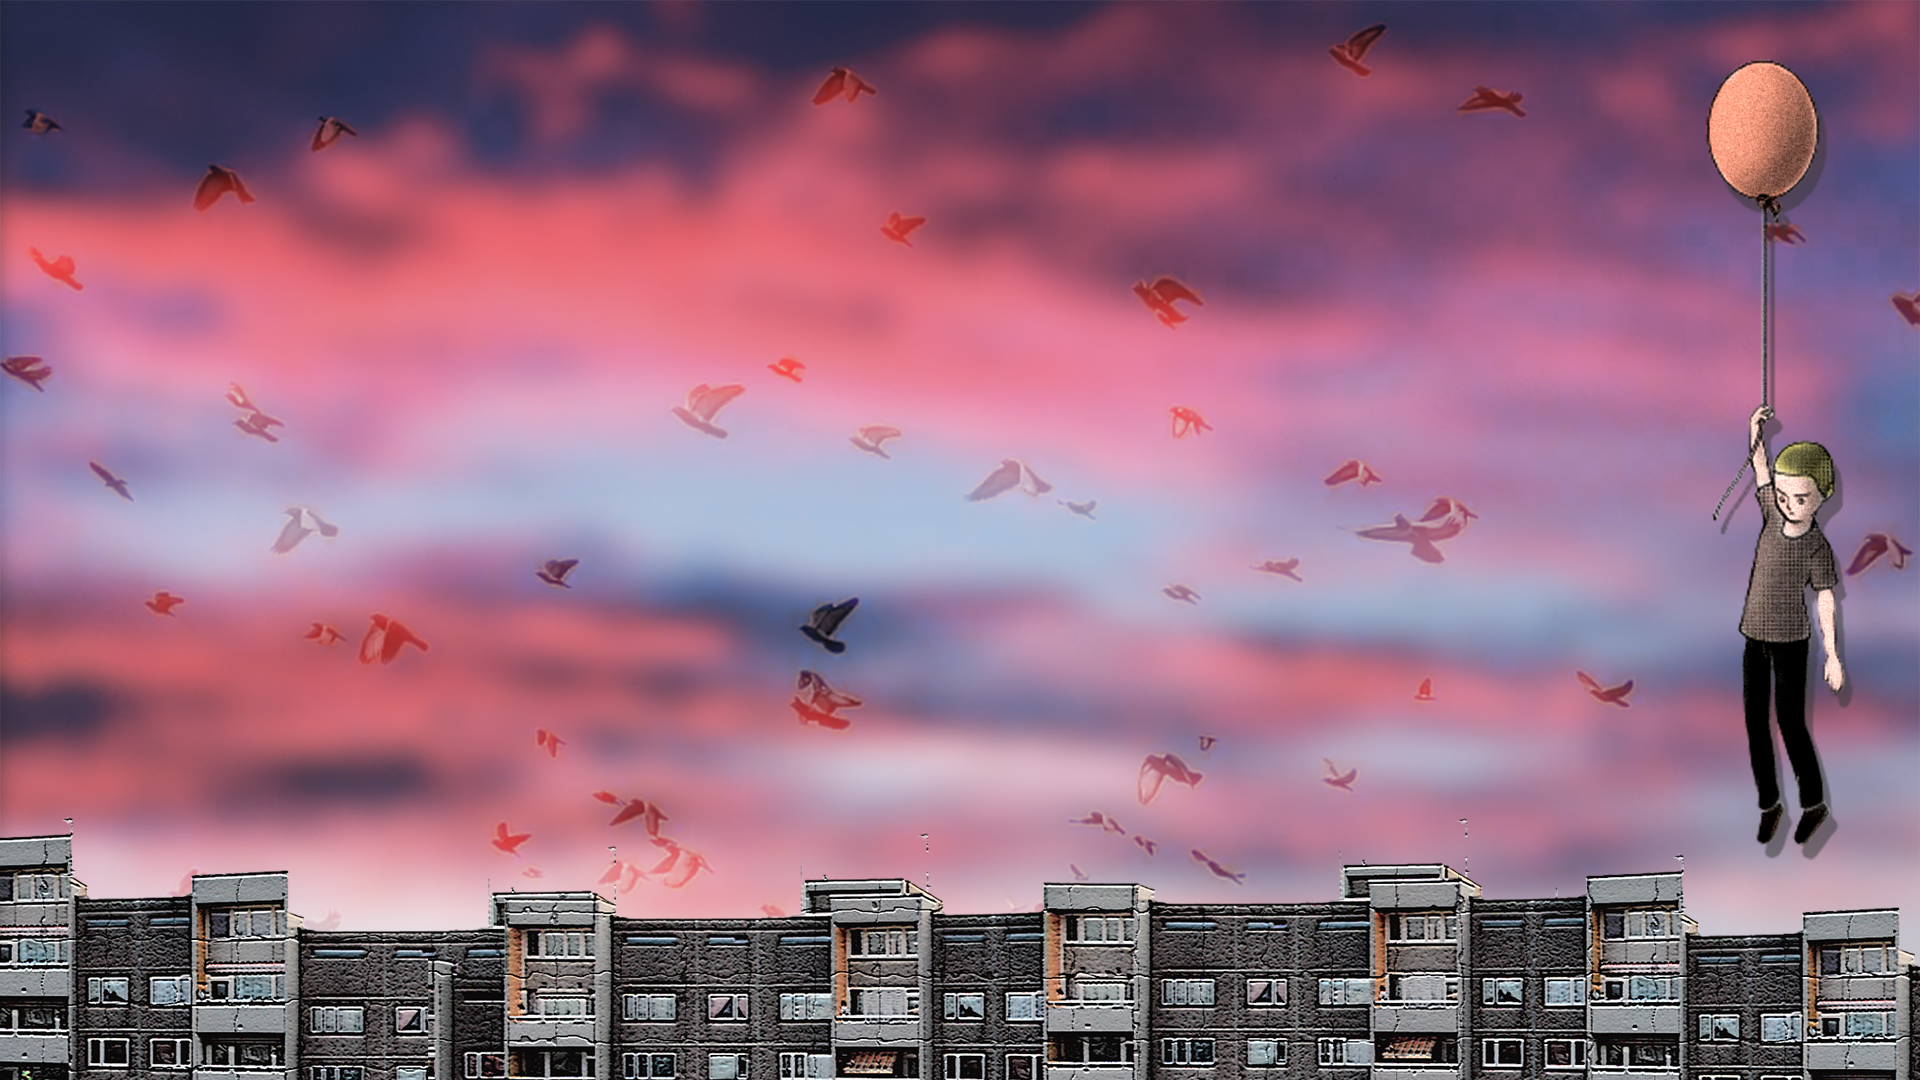 Auf dem Bild ist ein Kind zu sehen. Es hält einen Luftballon und schwebt in der Luft. Im Hintergrund sind Wohnblöcke zu sehen, rosarote Wolken am Himmel und Tauben.